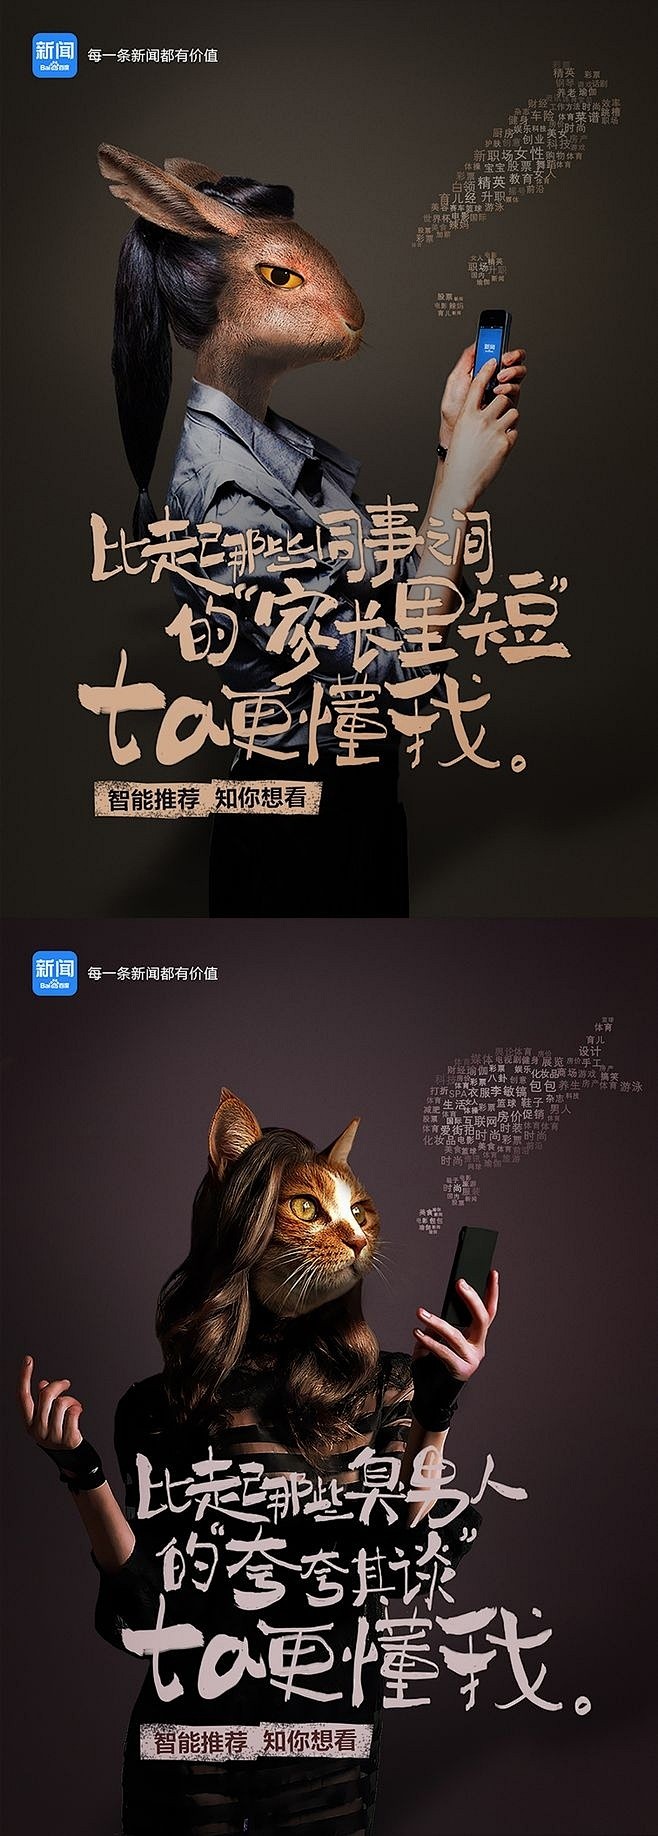 #设计秀# 一些中文排版的海报。有宝宝反...